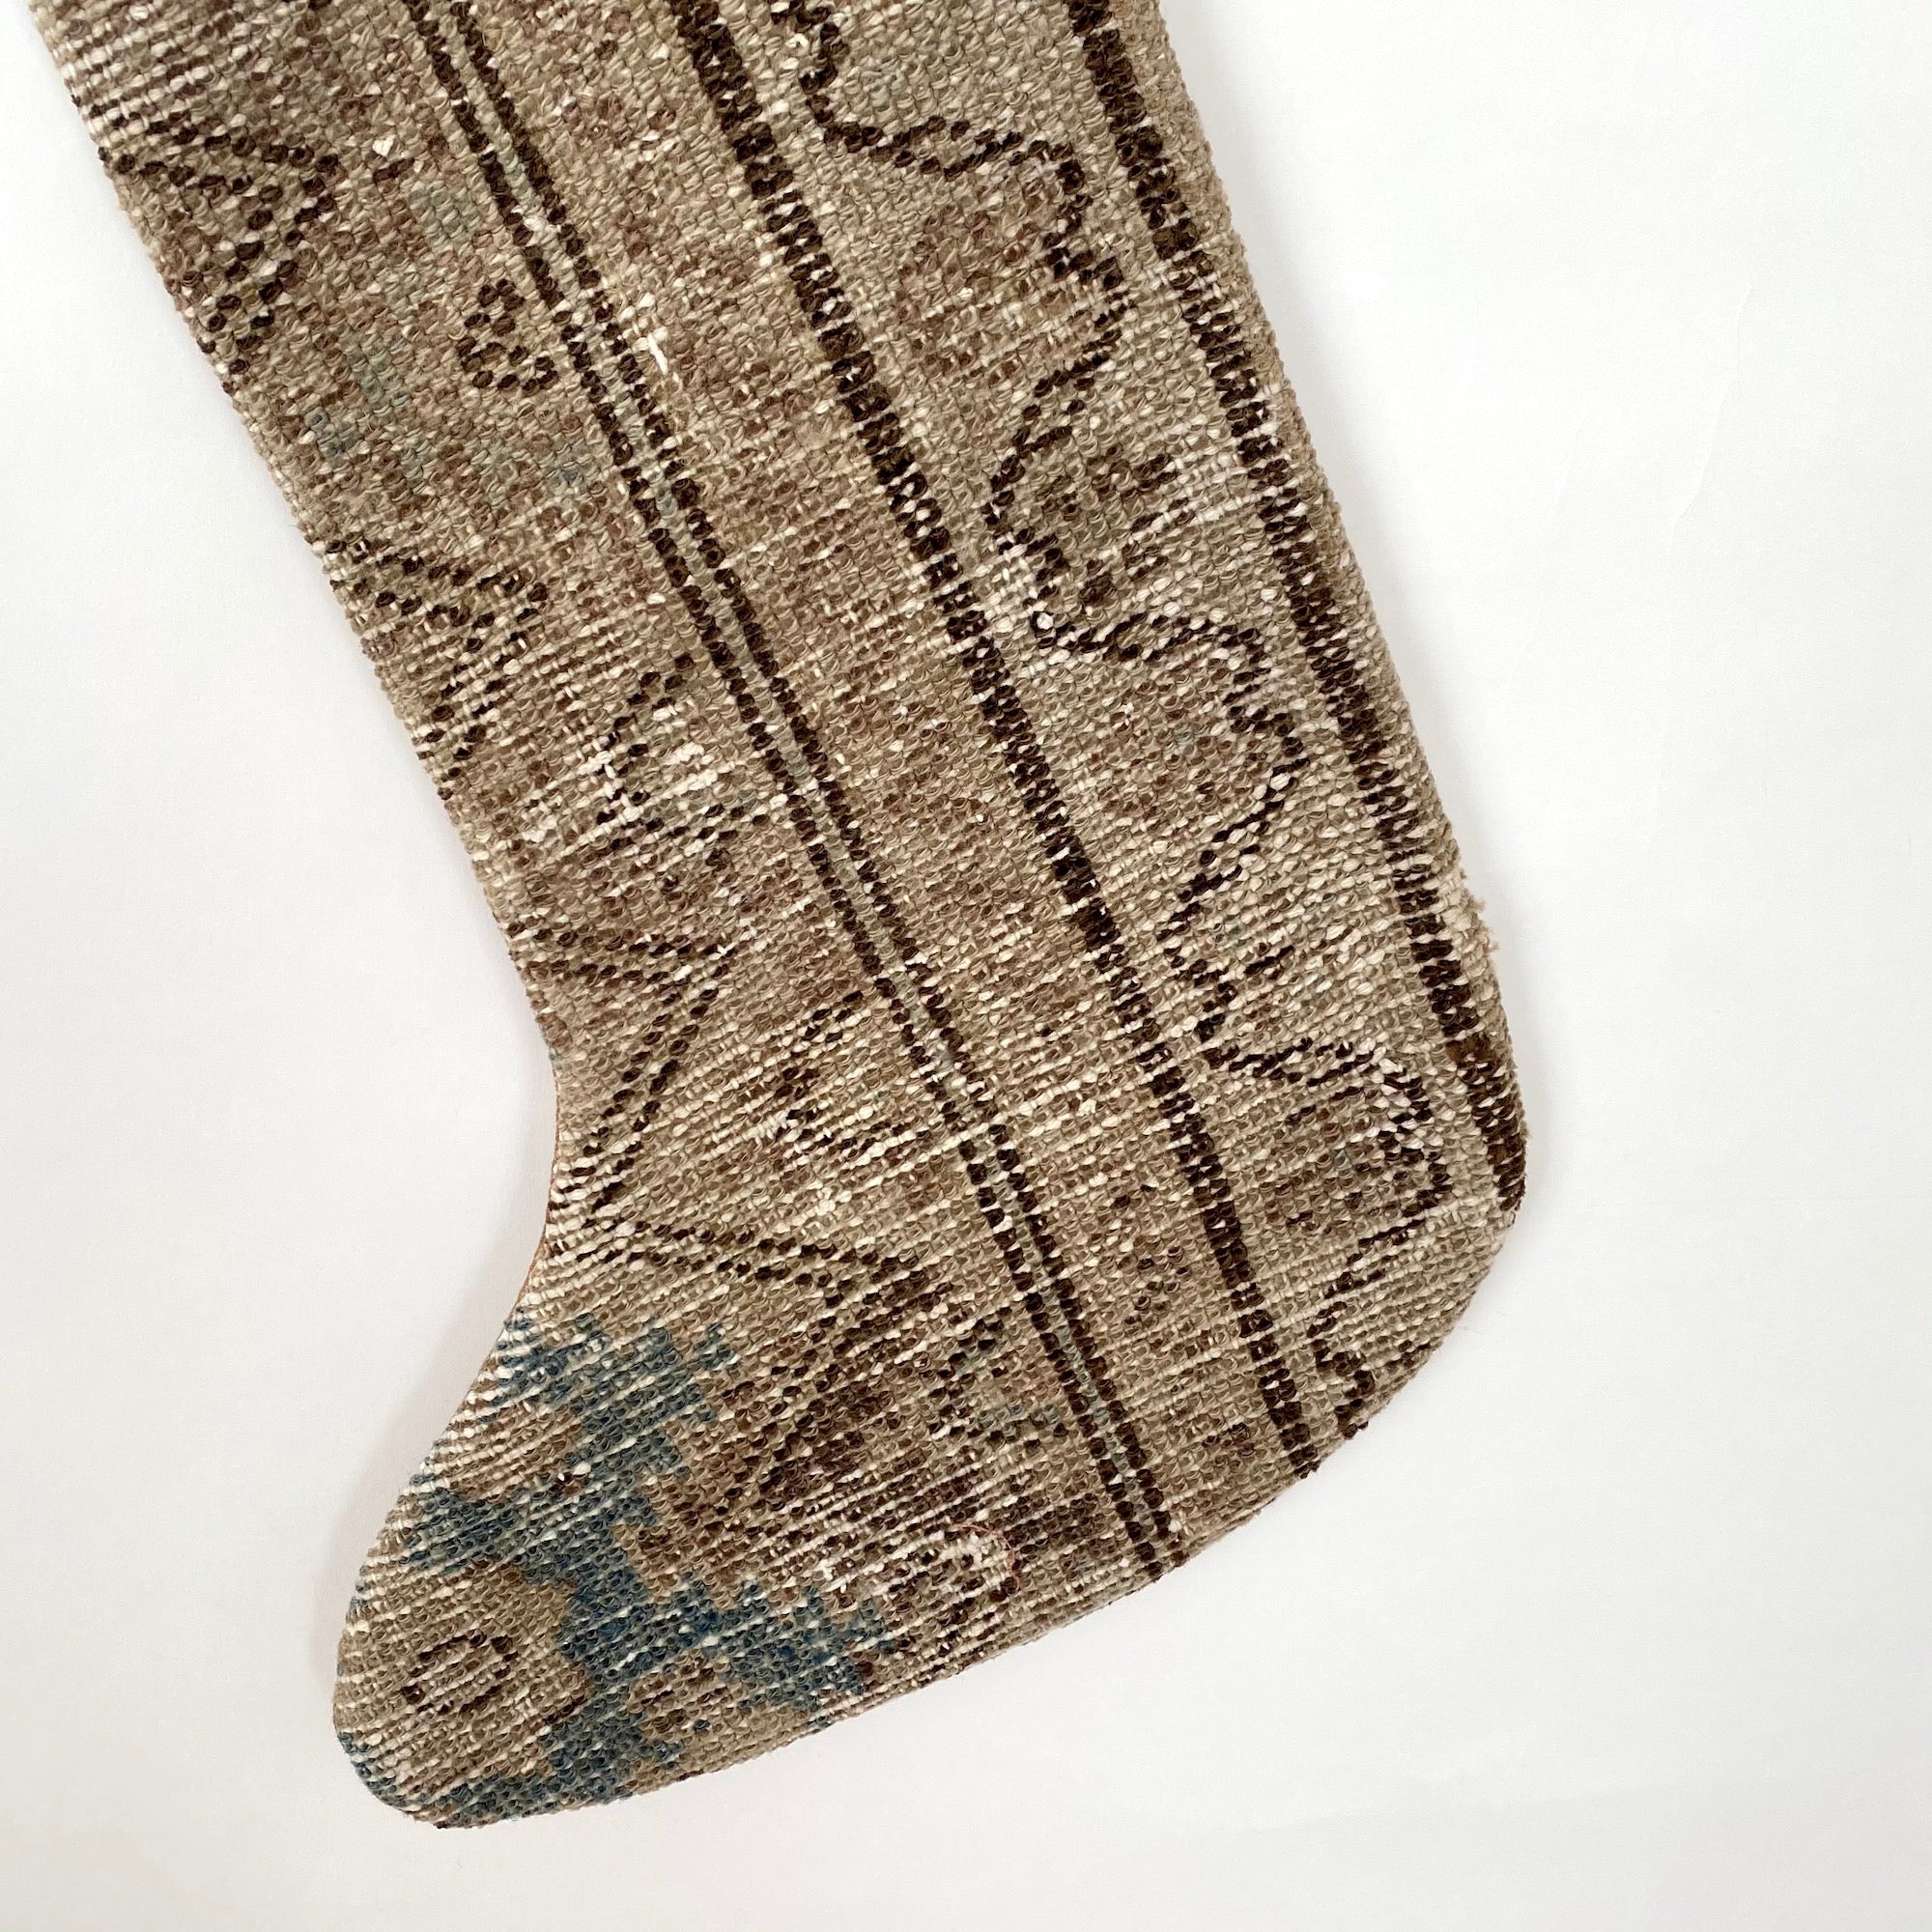 Kadiza - Vintage Stocking - kudenrugs